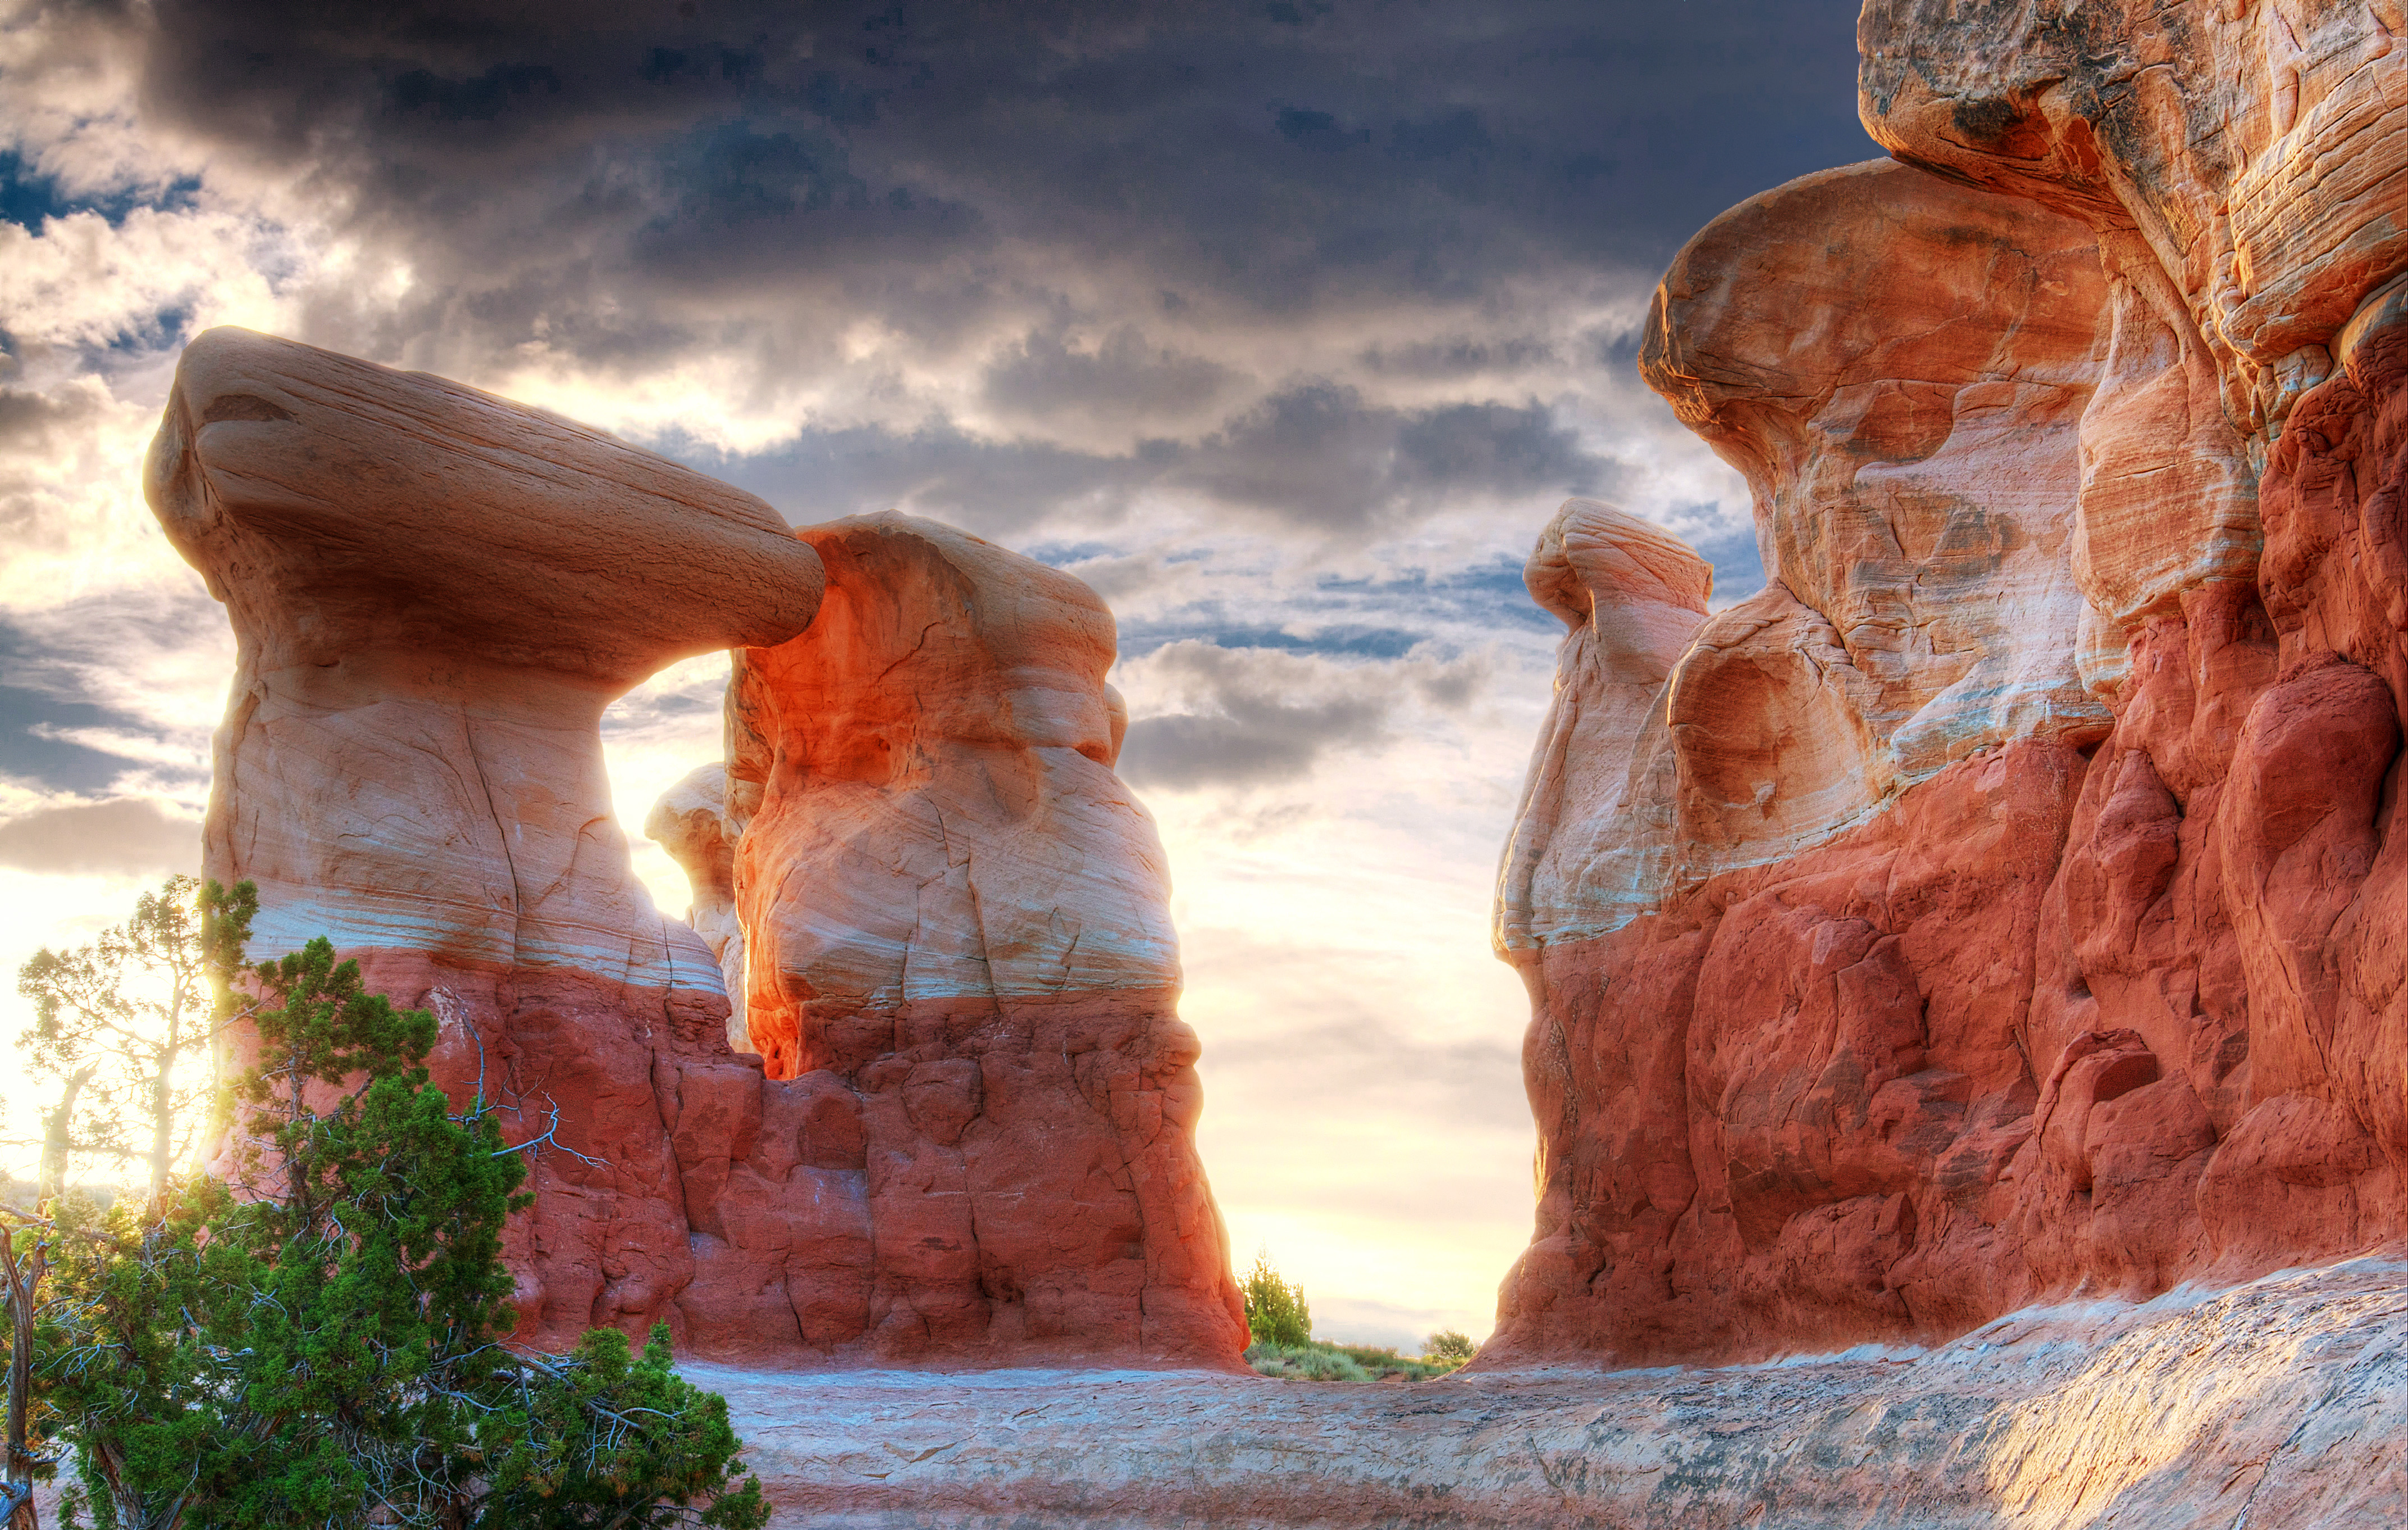 Уникальные творения природы. Боливия каньон Палька. Долина монументов чудо природы. Гейзер Флай, США. Выветренные скалы Америка.